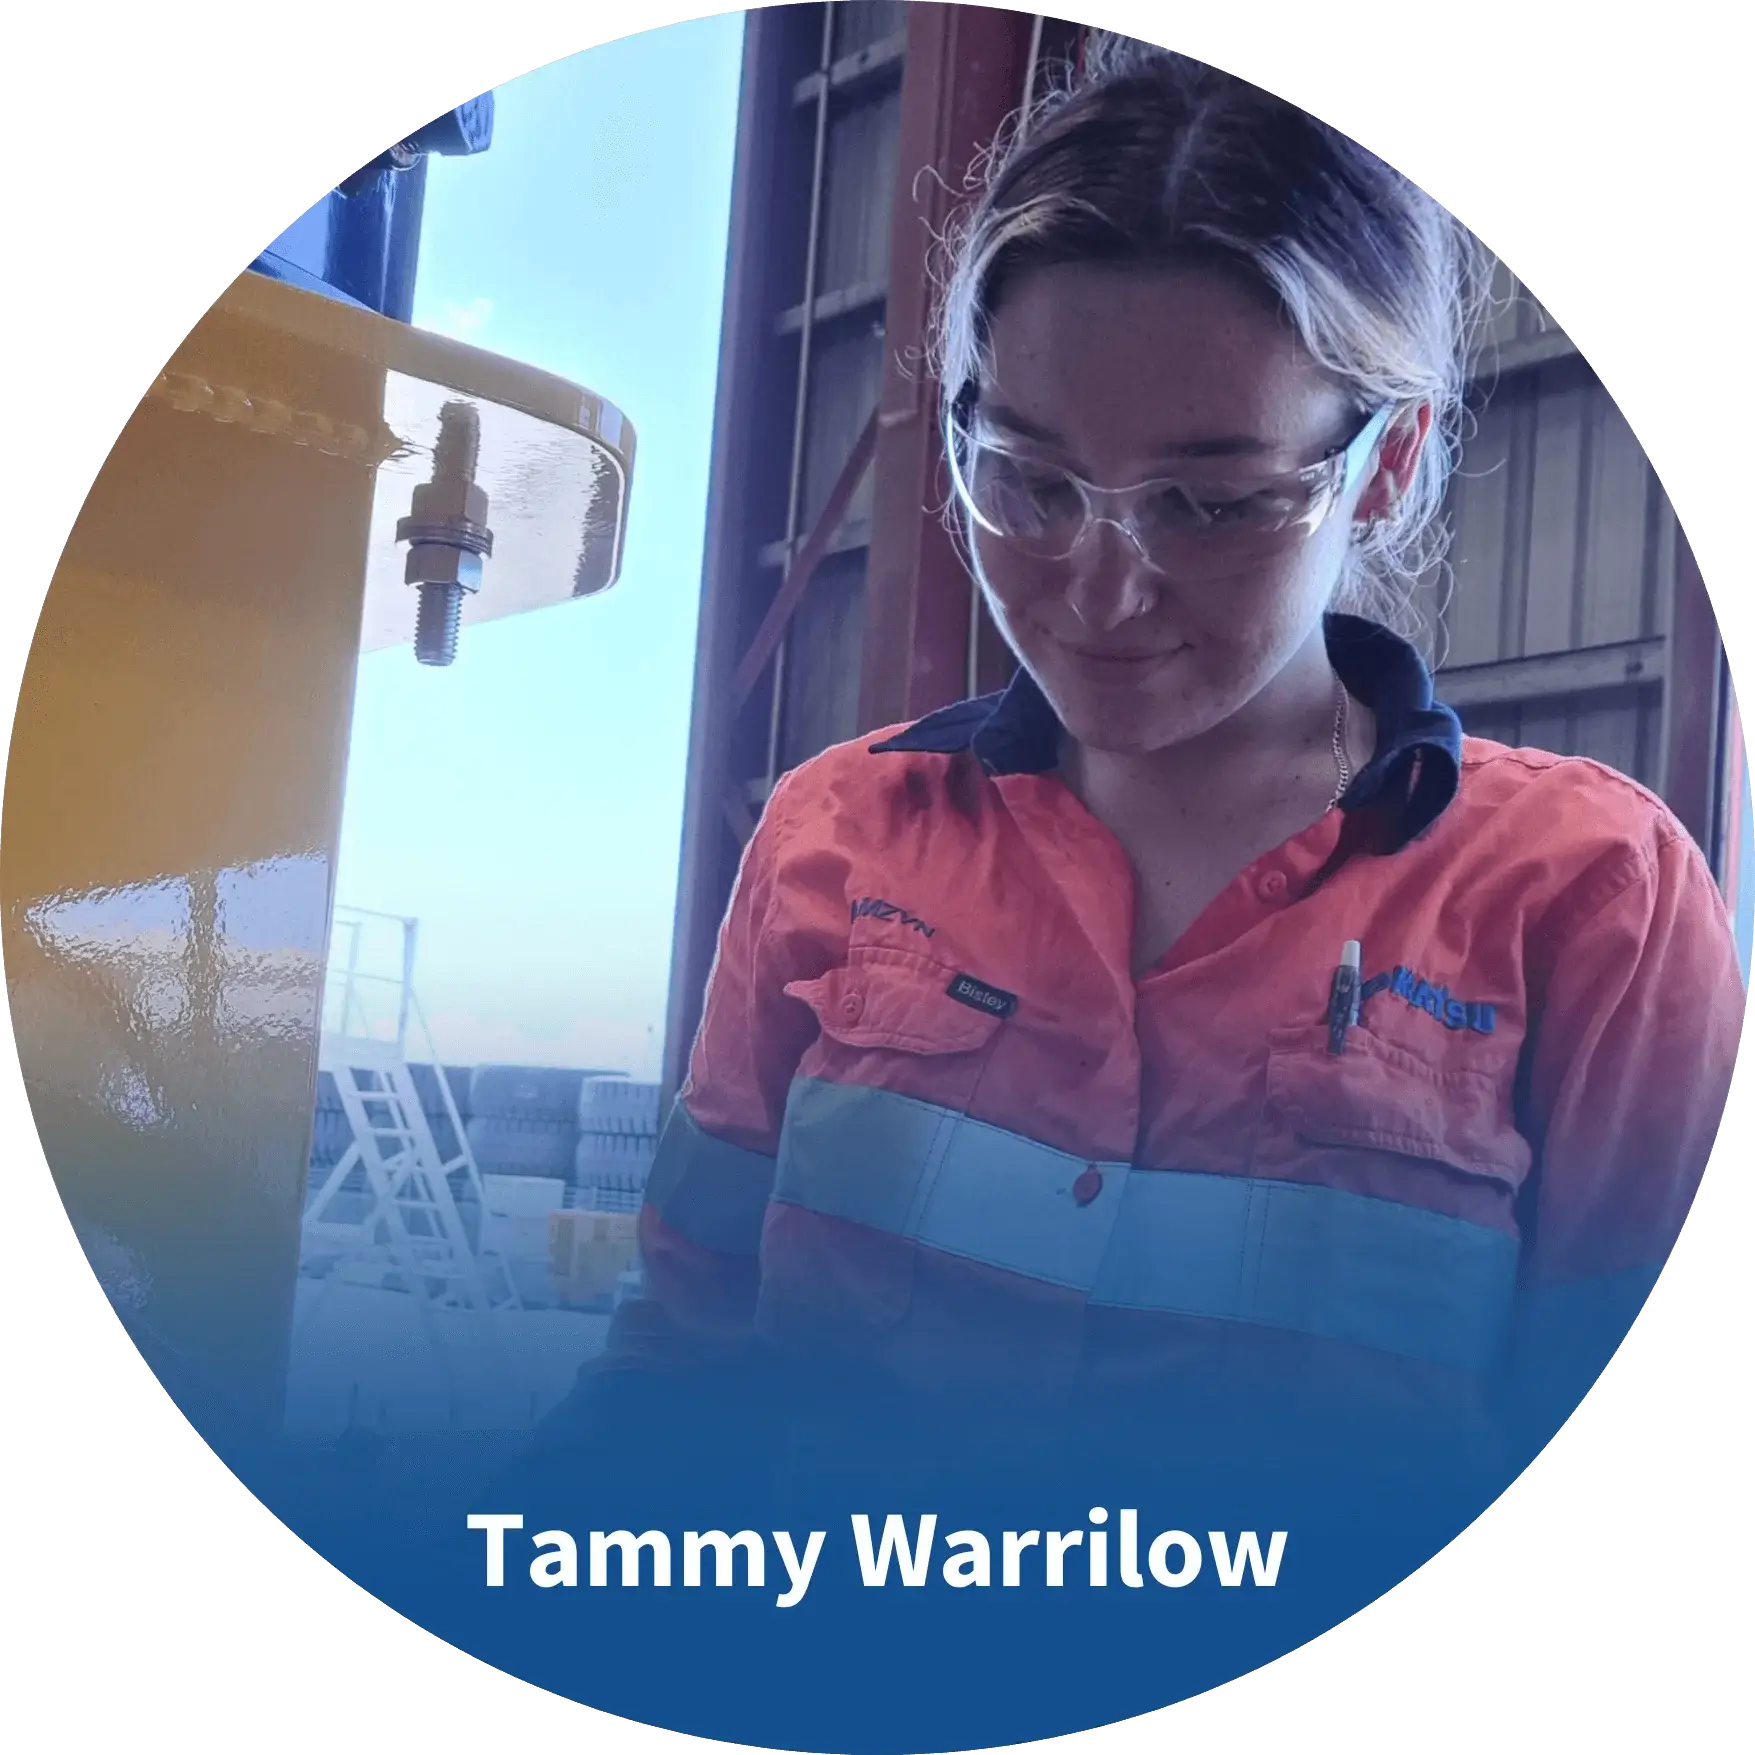 Tammy Warrilow-Komatsu Apprentices Program